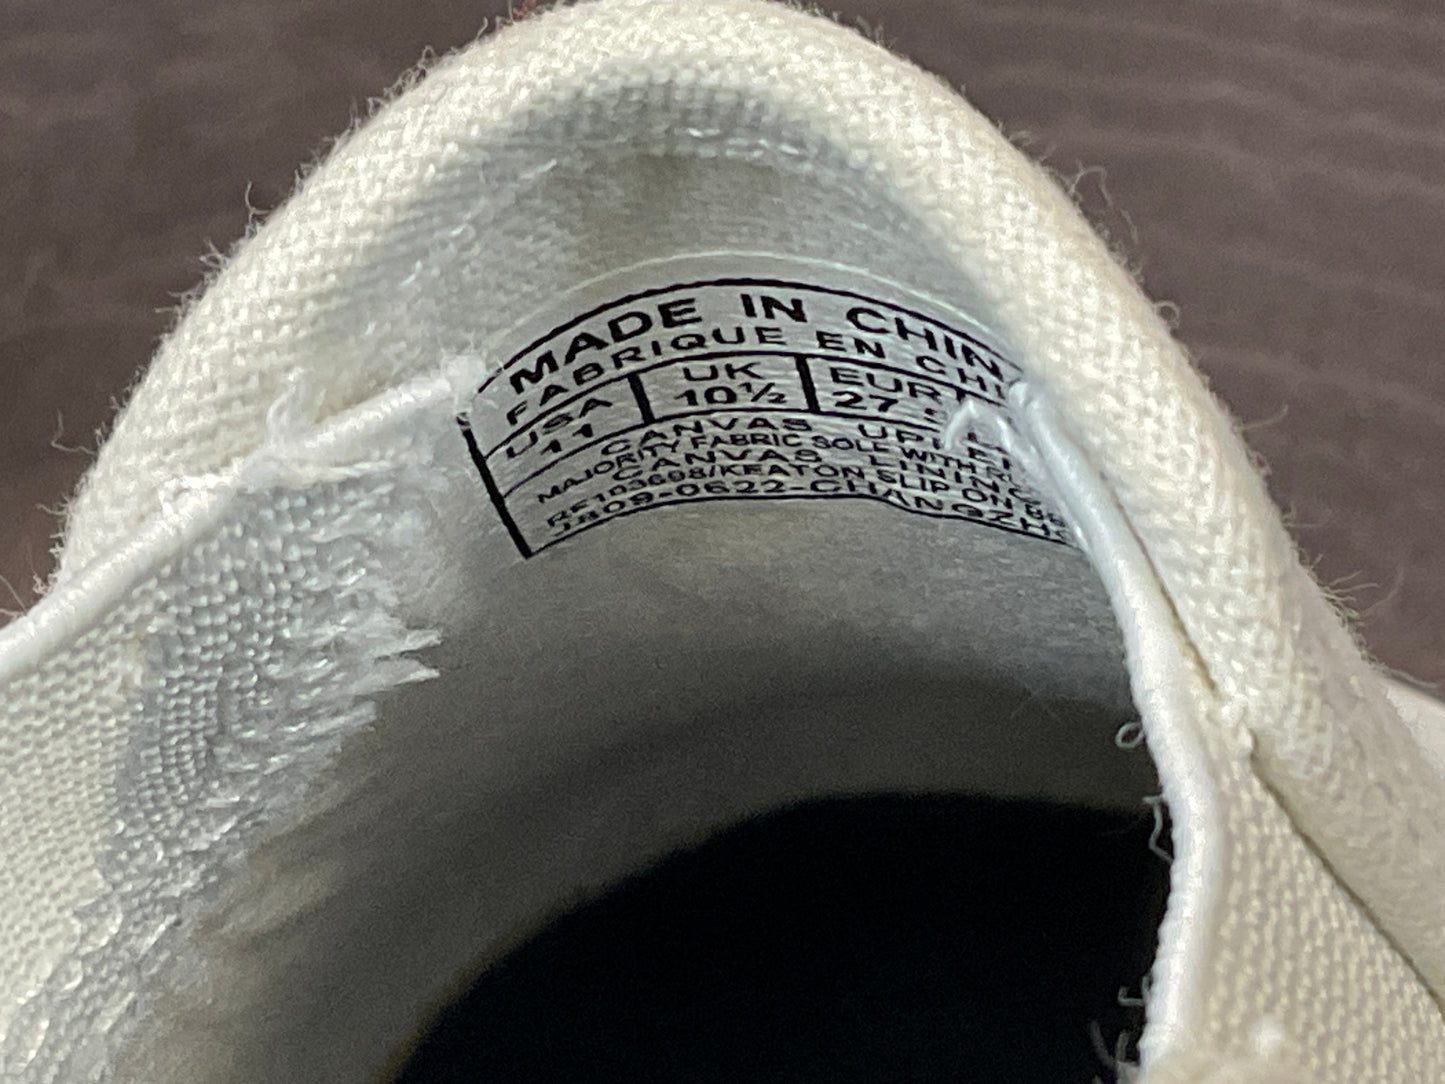 Polo Ralph Lauren Girls' Keaton Bear Slip-On Sneakers, Size 11